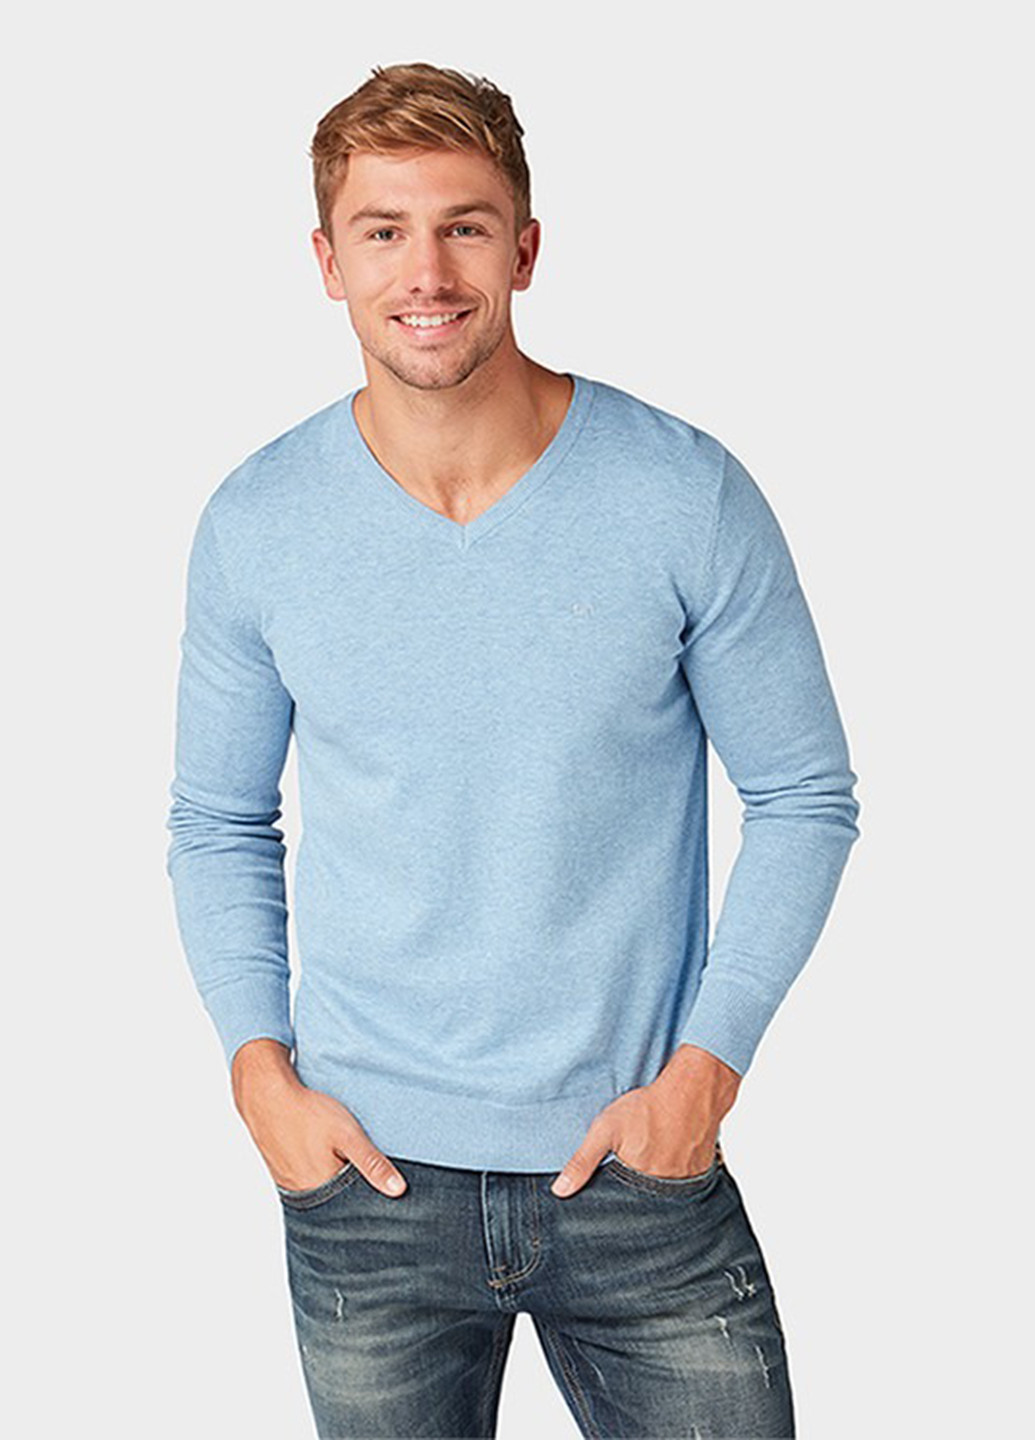 Голубой демисезонный пуловер пуловер Tom Tailor